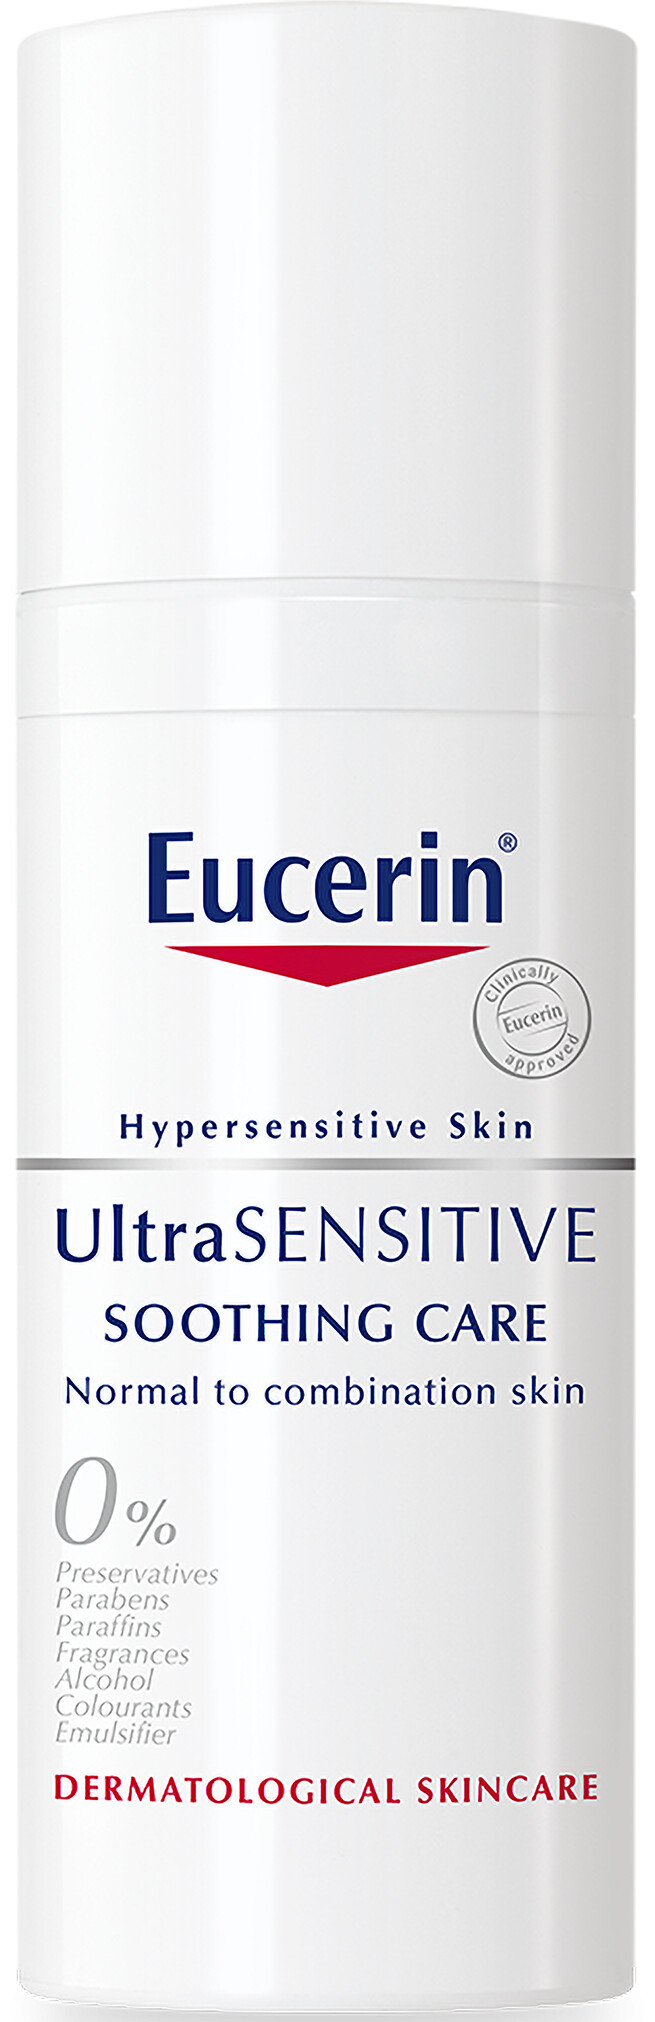 Eucerin ultra sensitive